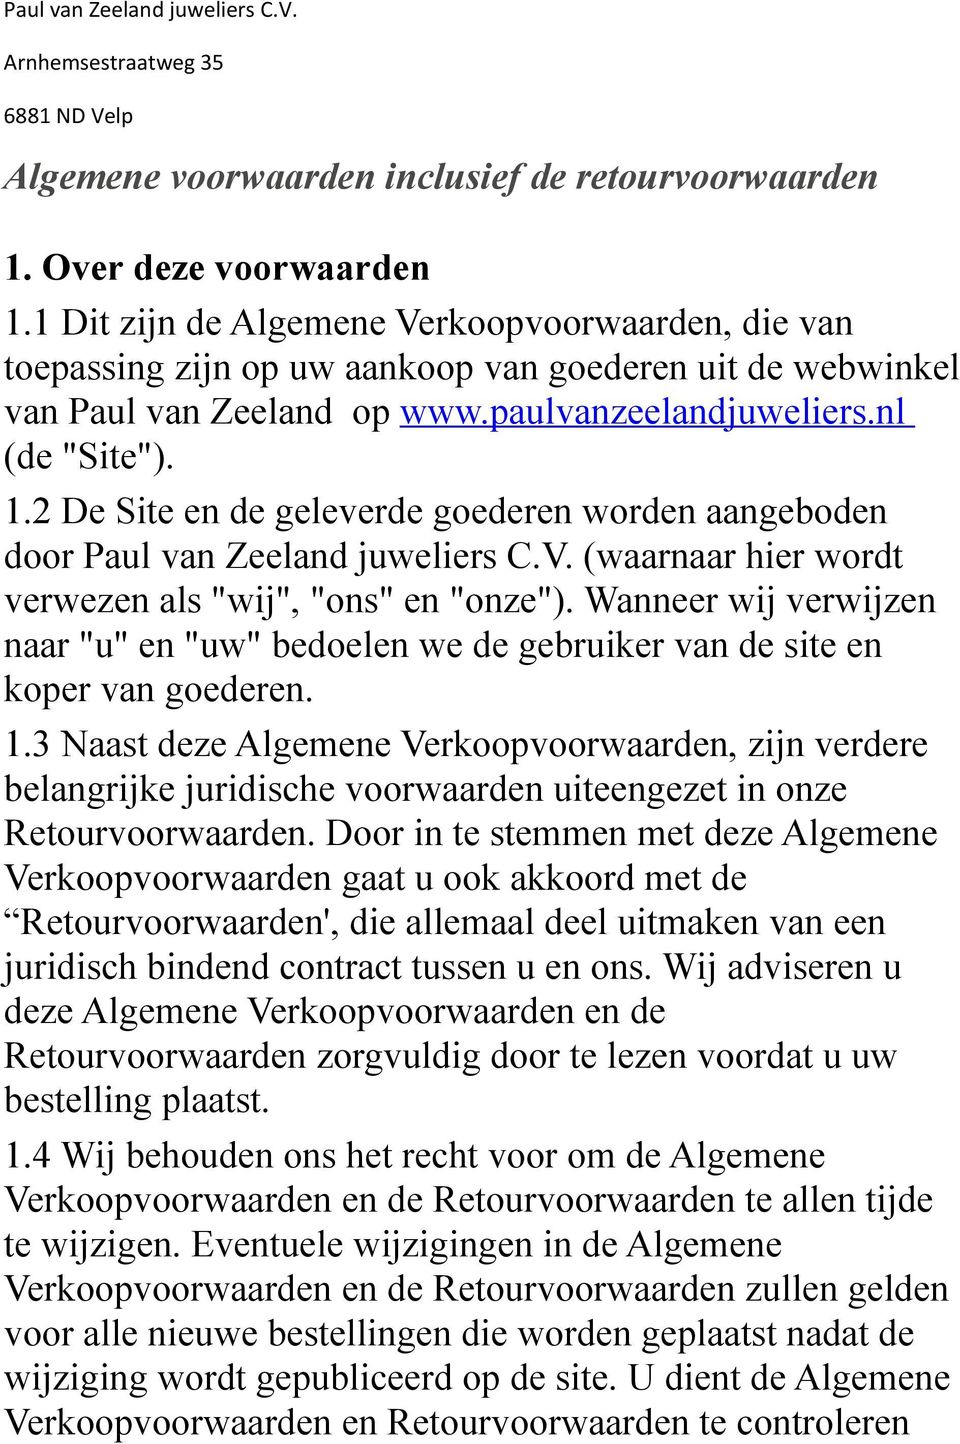 2 De Site en de geleverde goederen worden aangeboden door Paul van Zeeland juweliers C.V. (waarnaar hier wordt verwezen als "wij", "ons" en "onze").